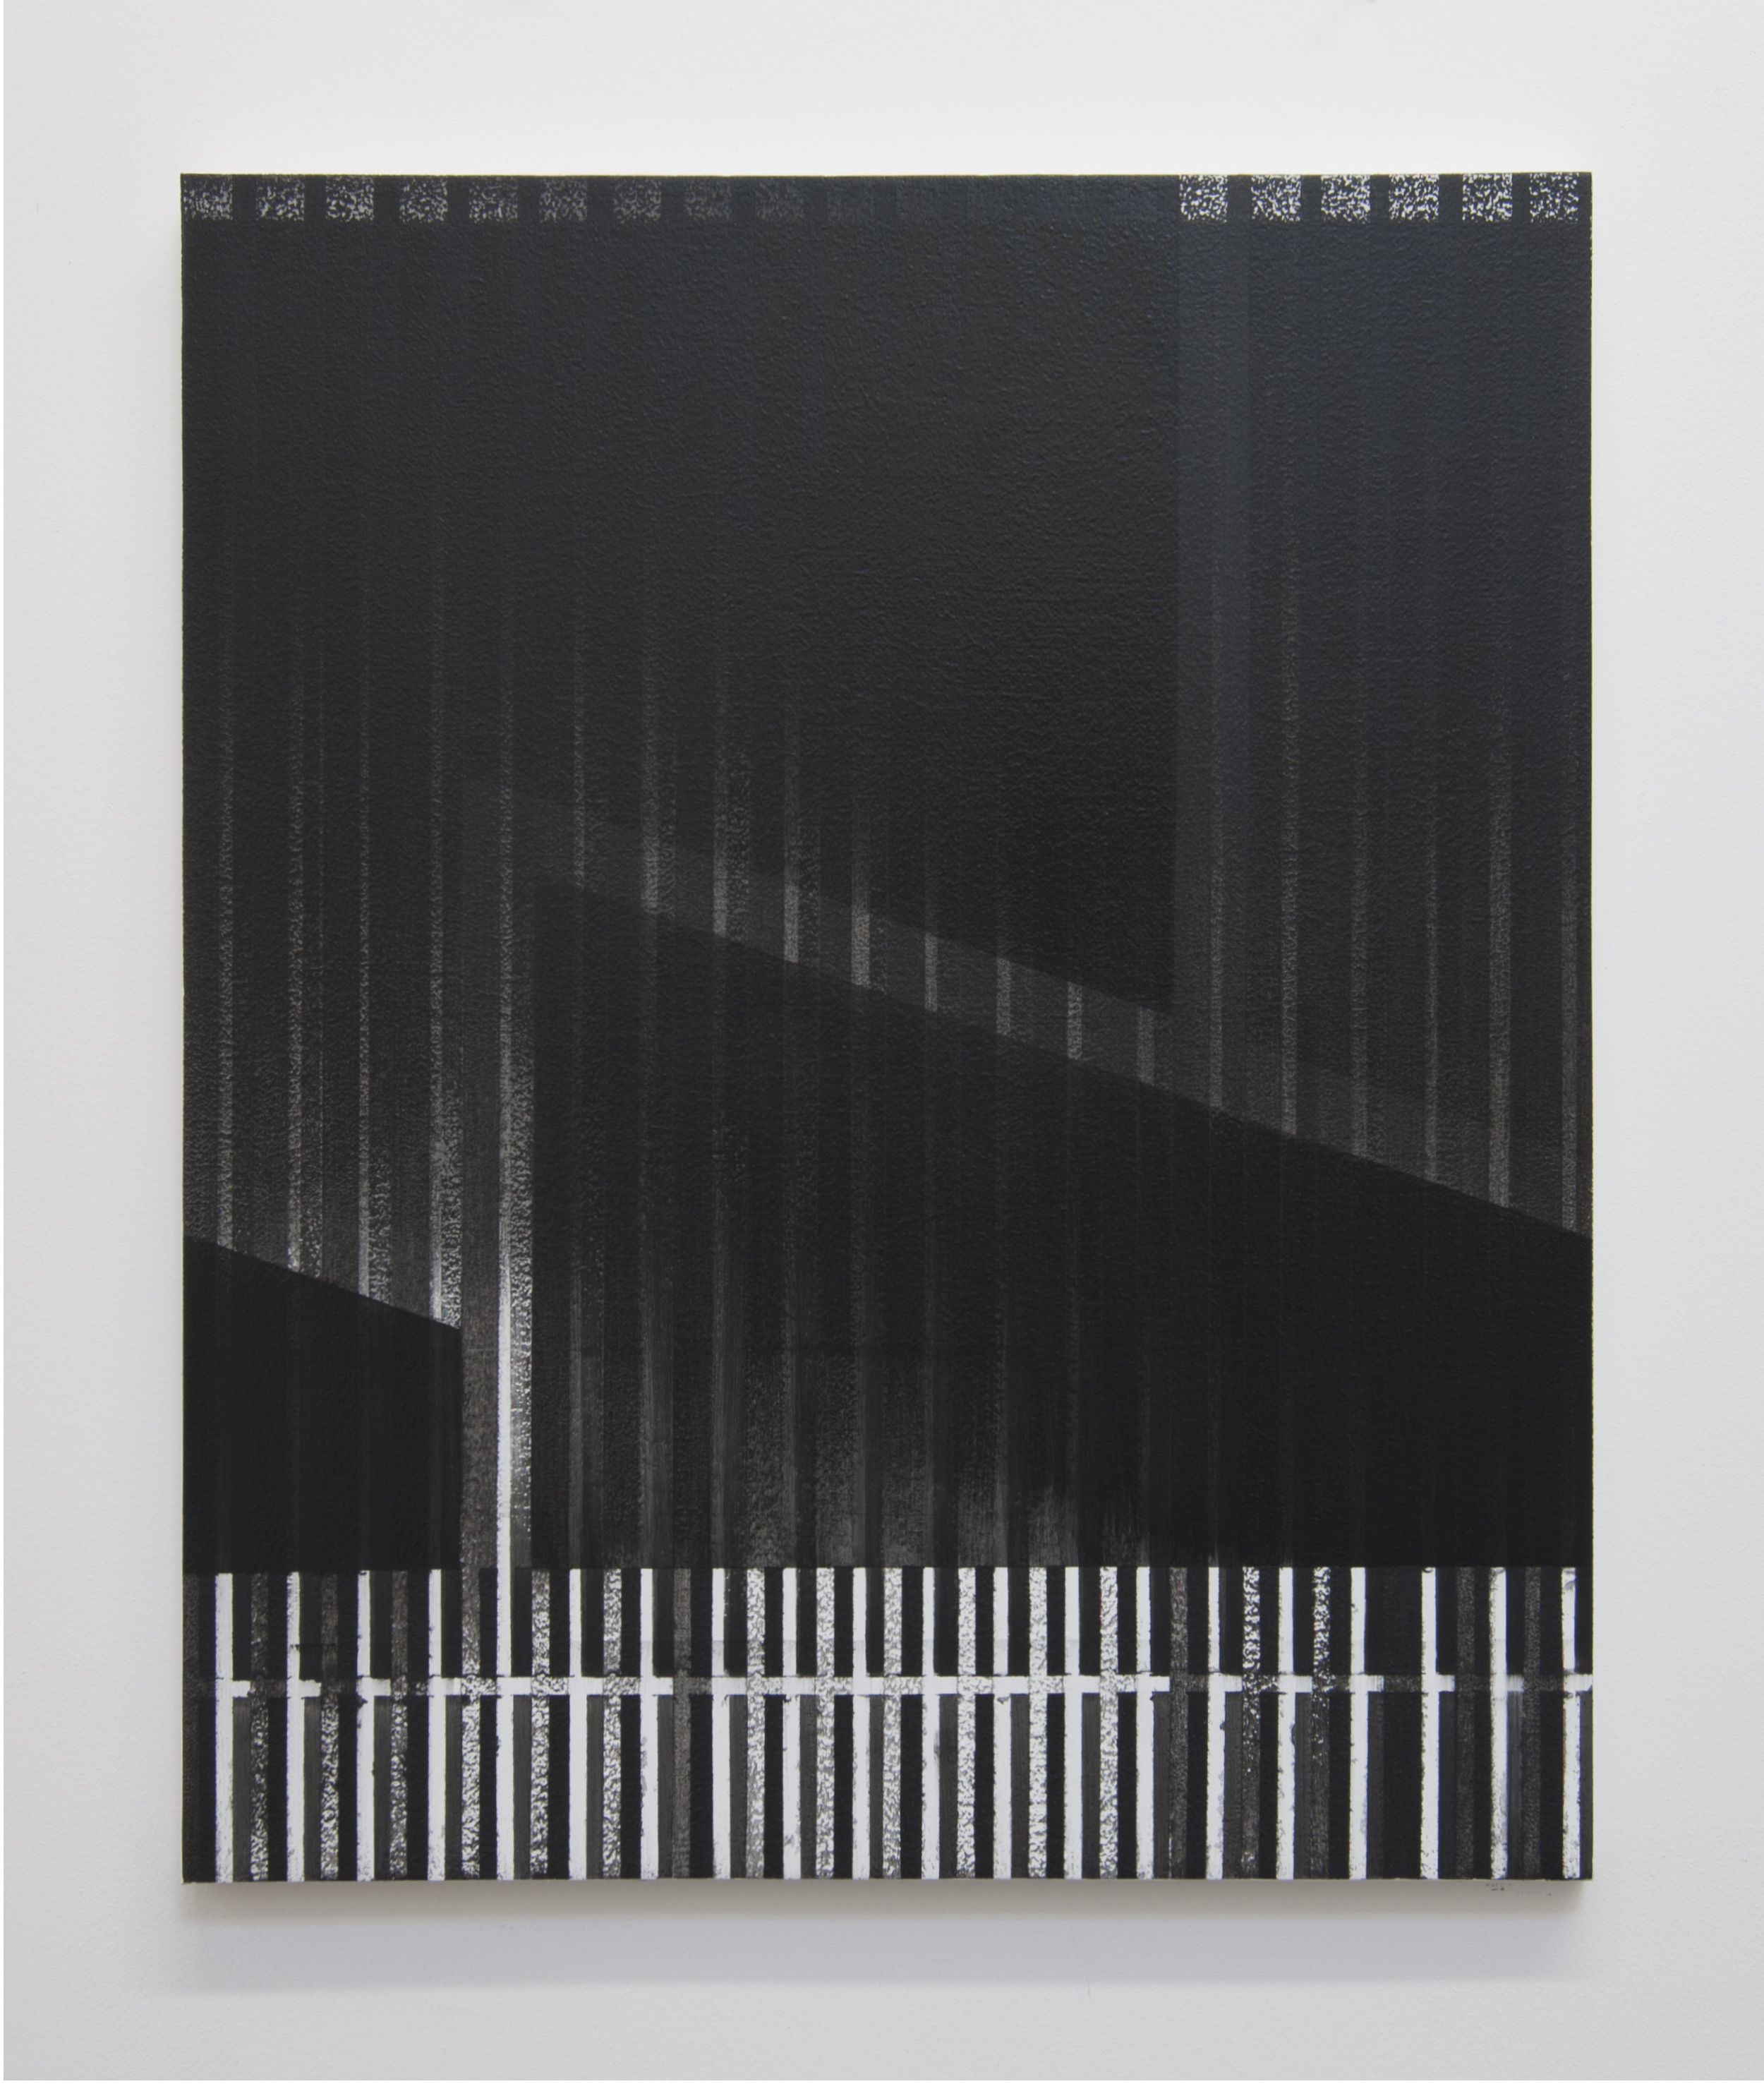  Facade, 2014  Acrylic on panel, 24 x 20 inches 